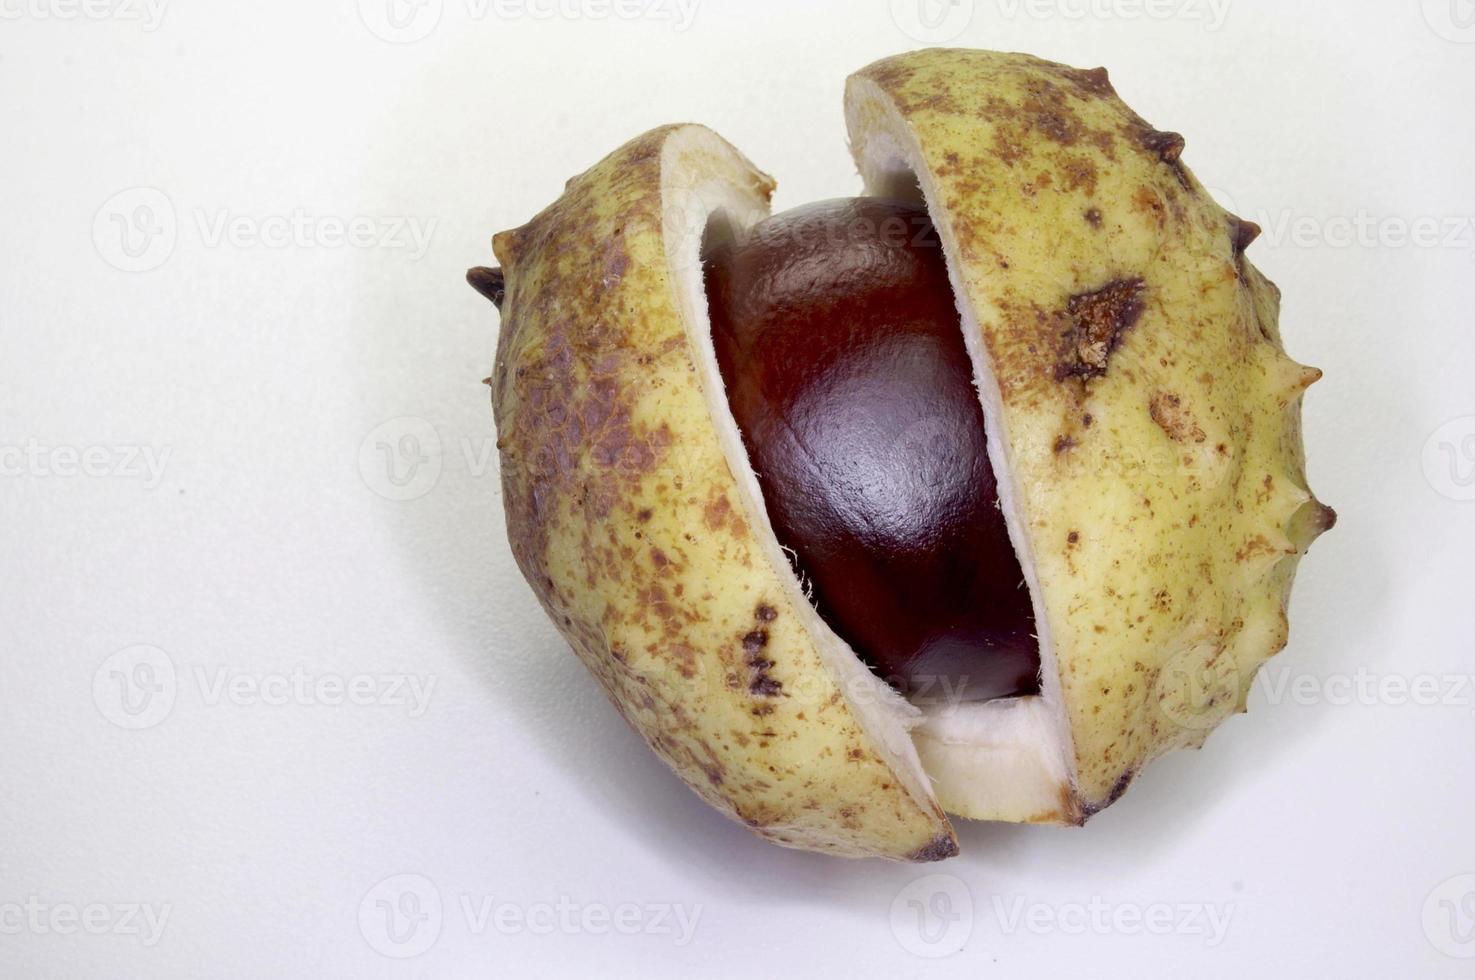 kastanienfrucht auf weiß foto